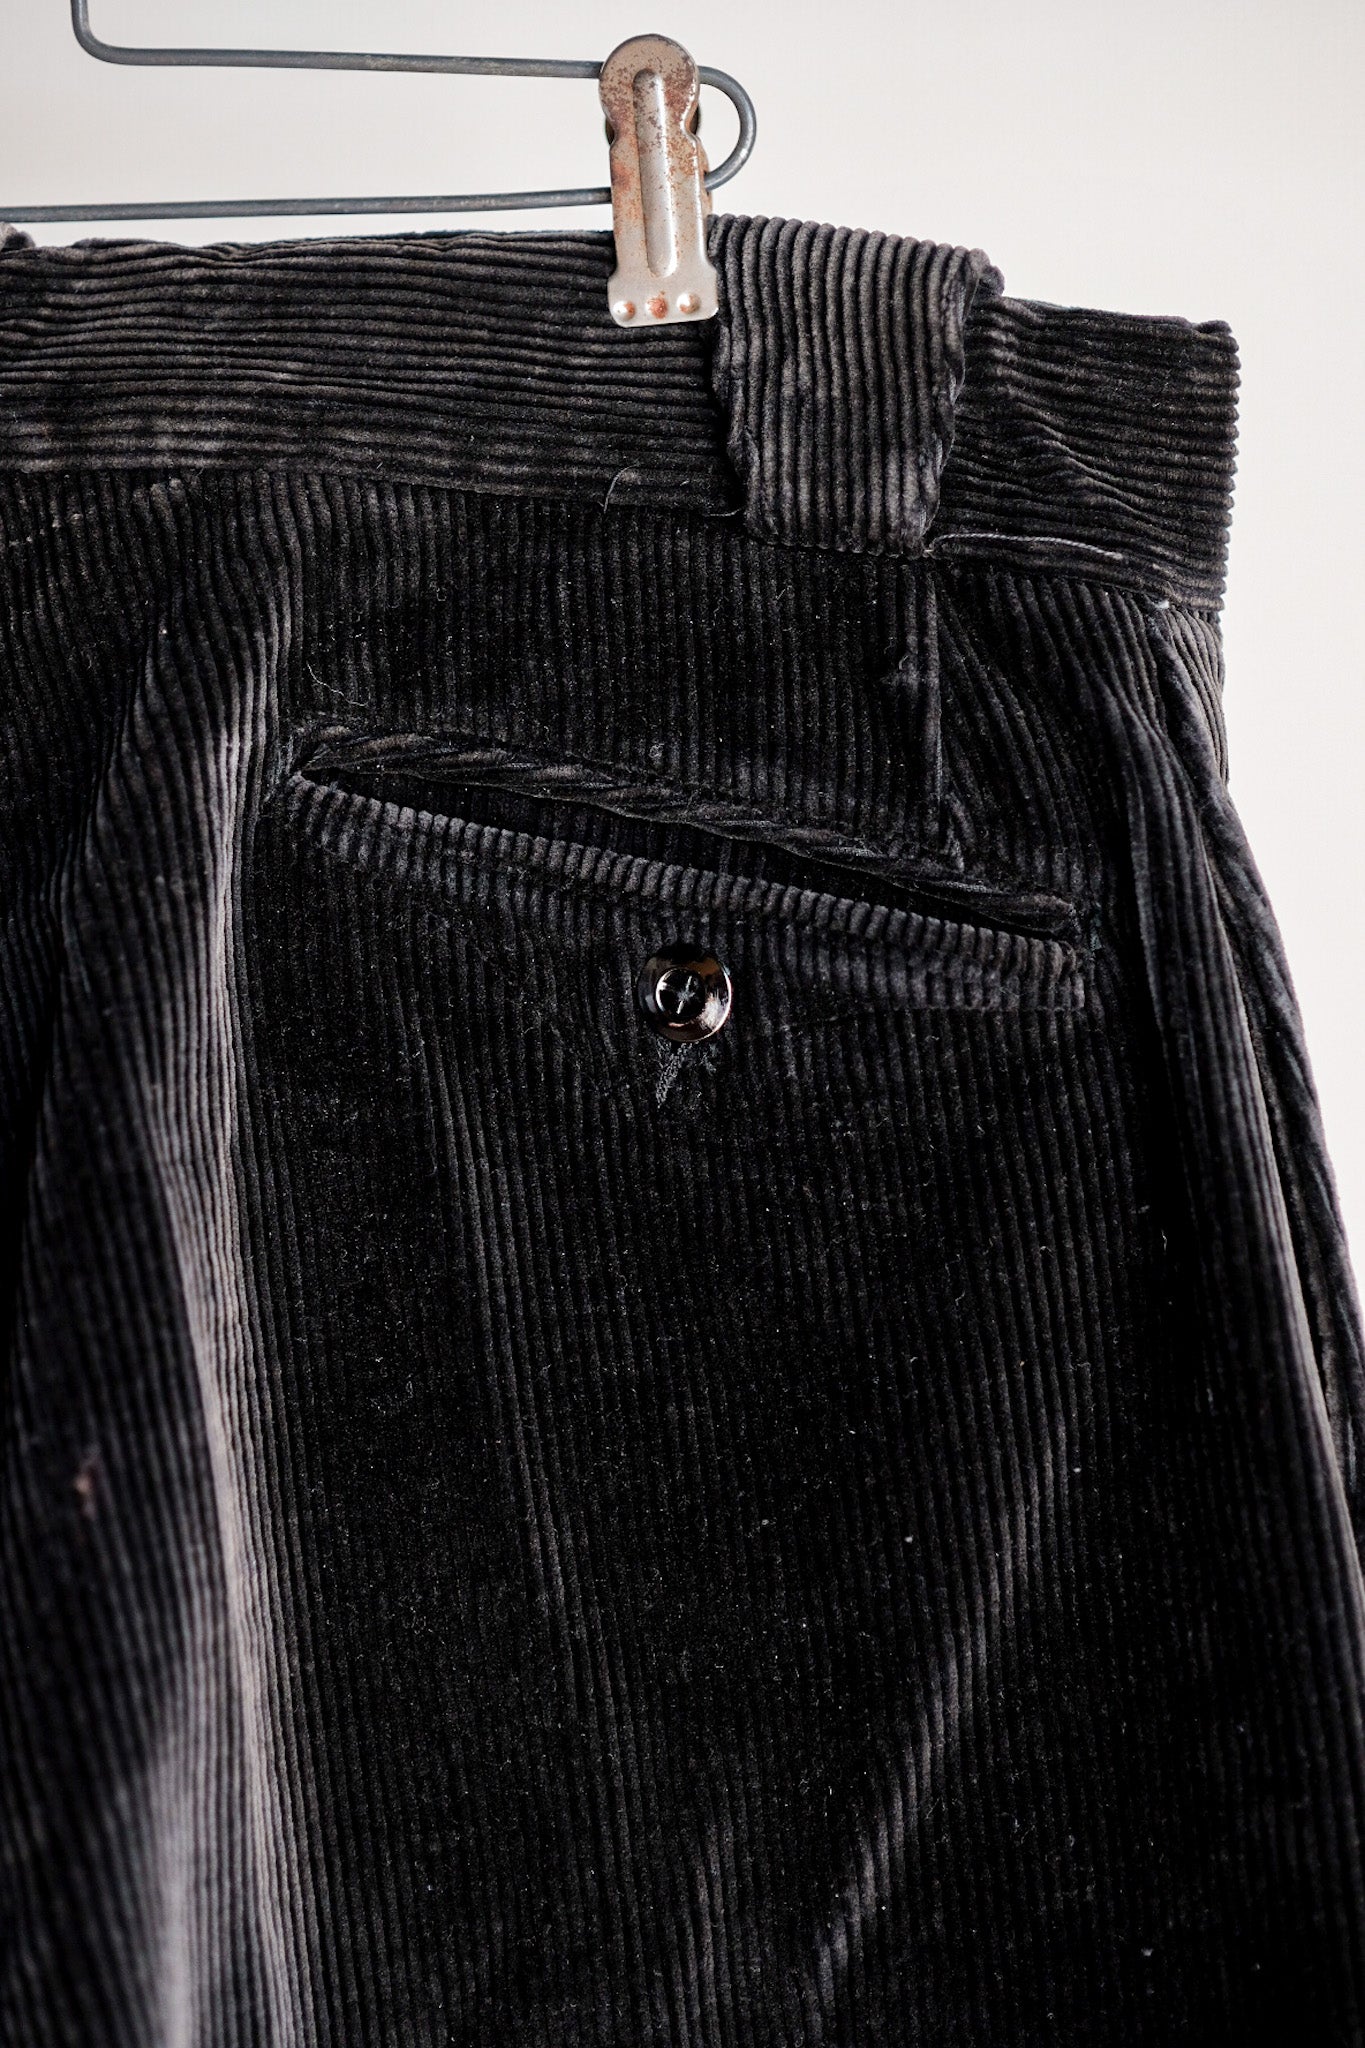 【~40's】French Vintage Dark Brown Corduroy Work Pants